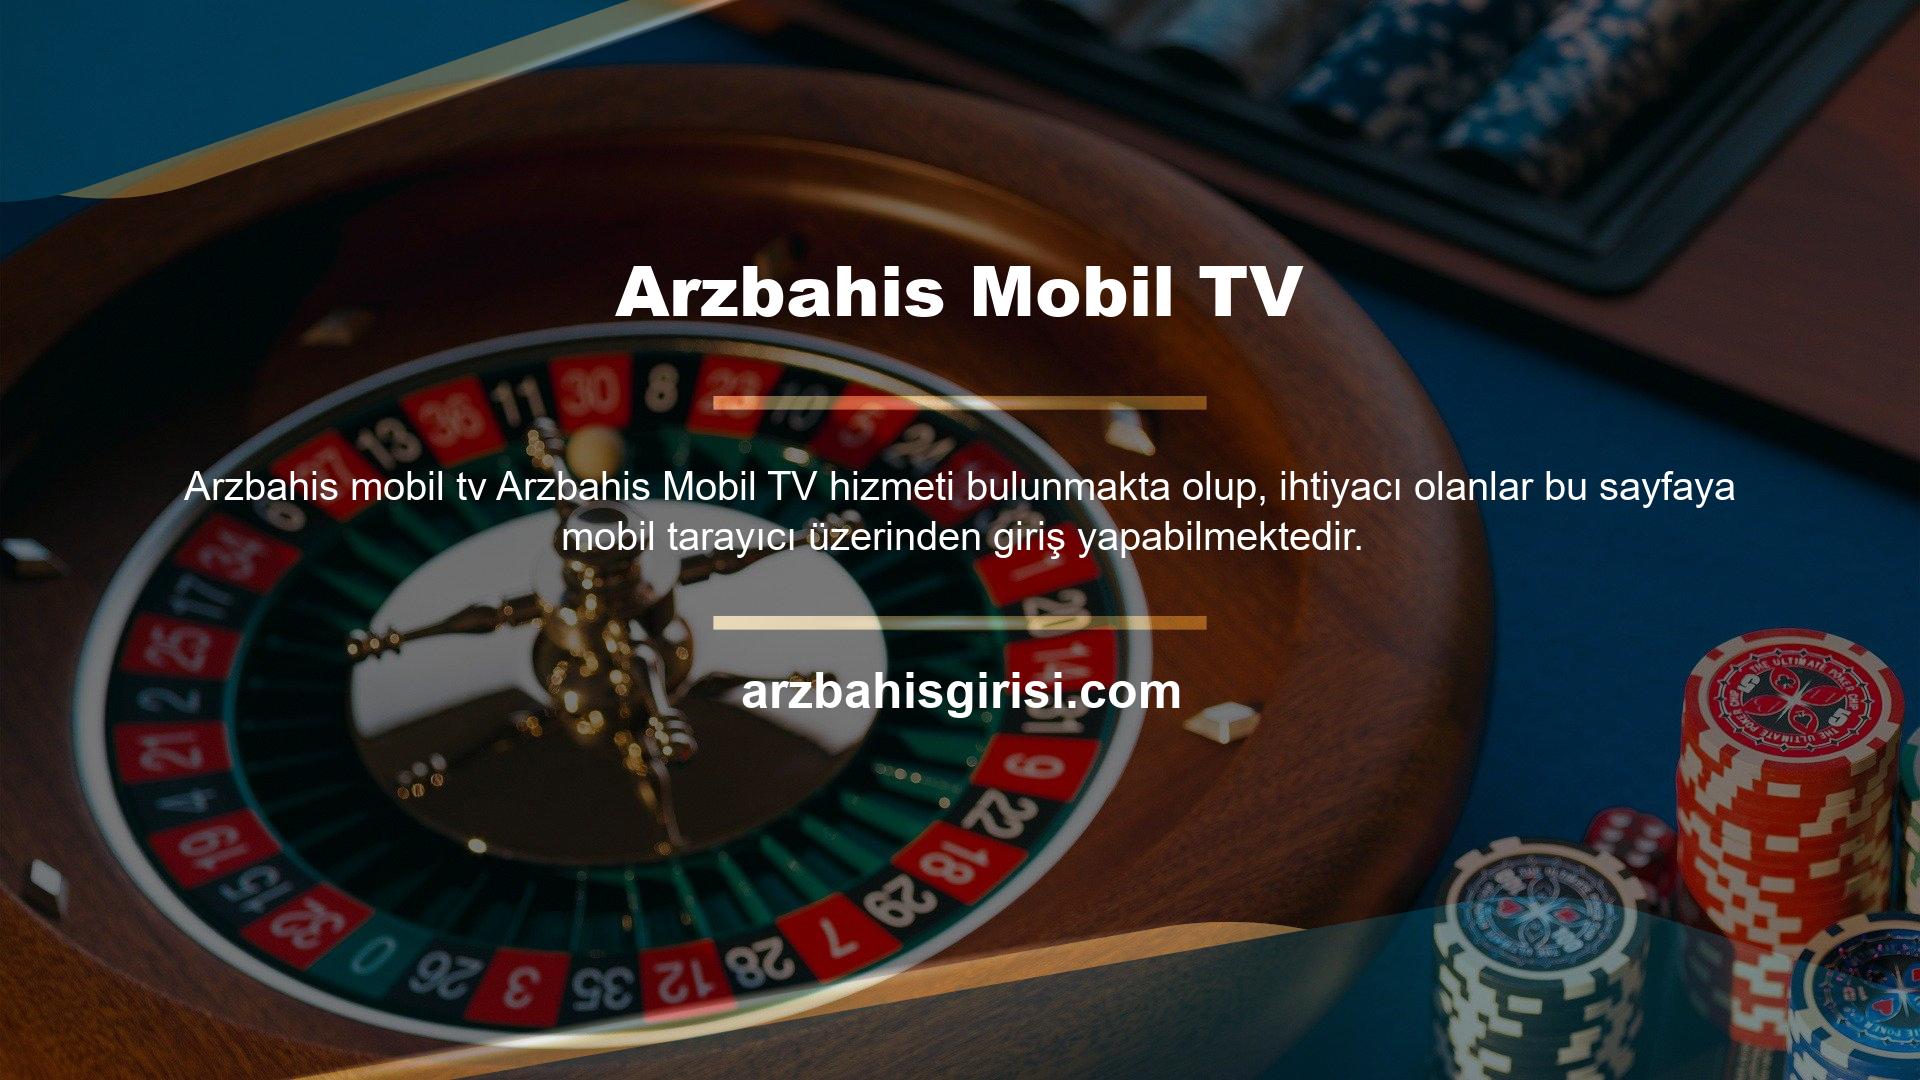 Arzbahis Mobil TV hizmeti bulunmakta olup, ihtiyacı olanlar bu sayfaya mobil tarayıcı üzerinden giriş yapabilmektedir. Özellikle yayınlanan